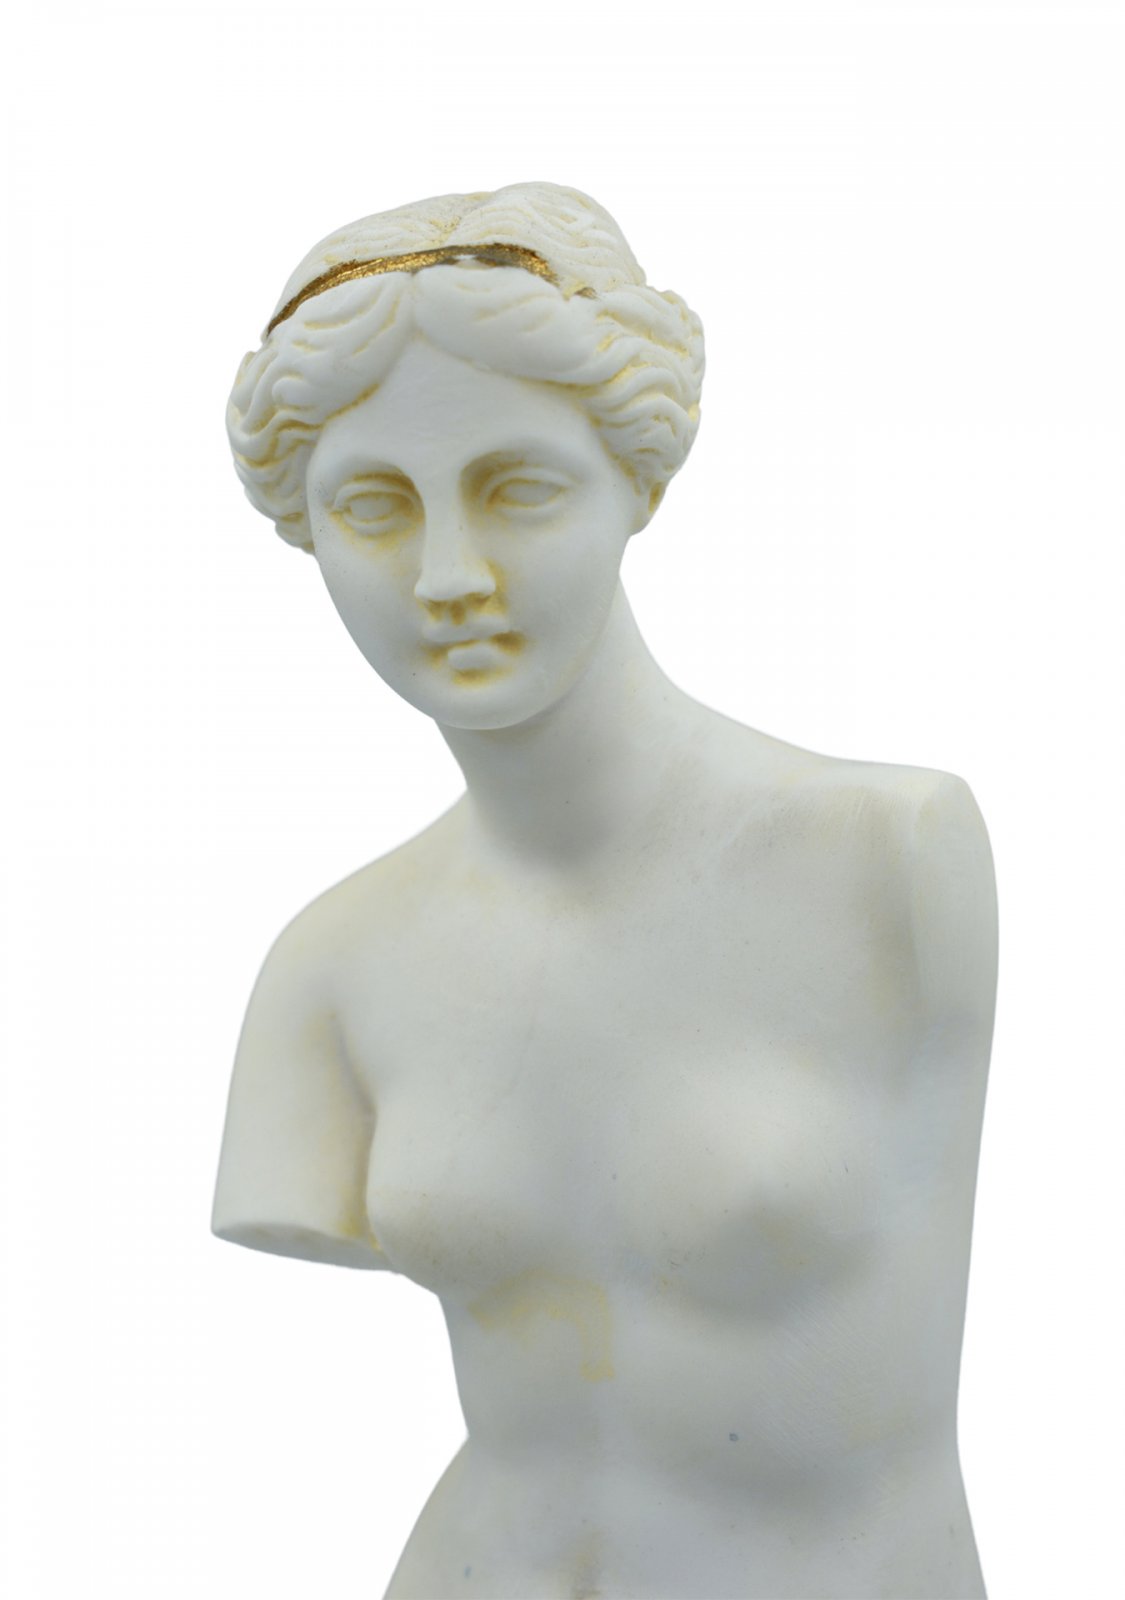 Aphrodite of Milos (Venus de Milo) greek alabaster statue with purple color and golden details